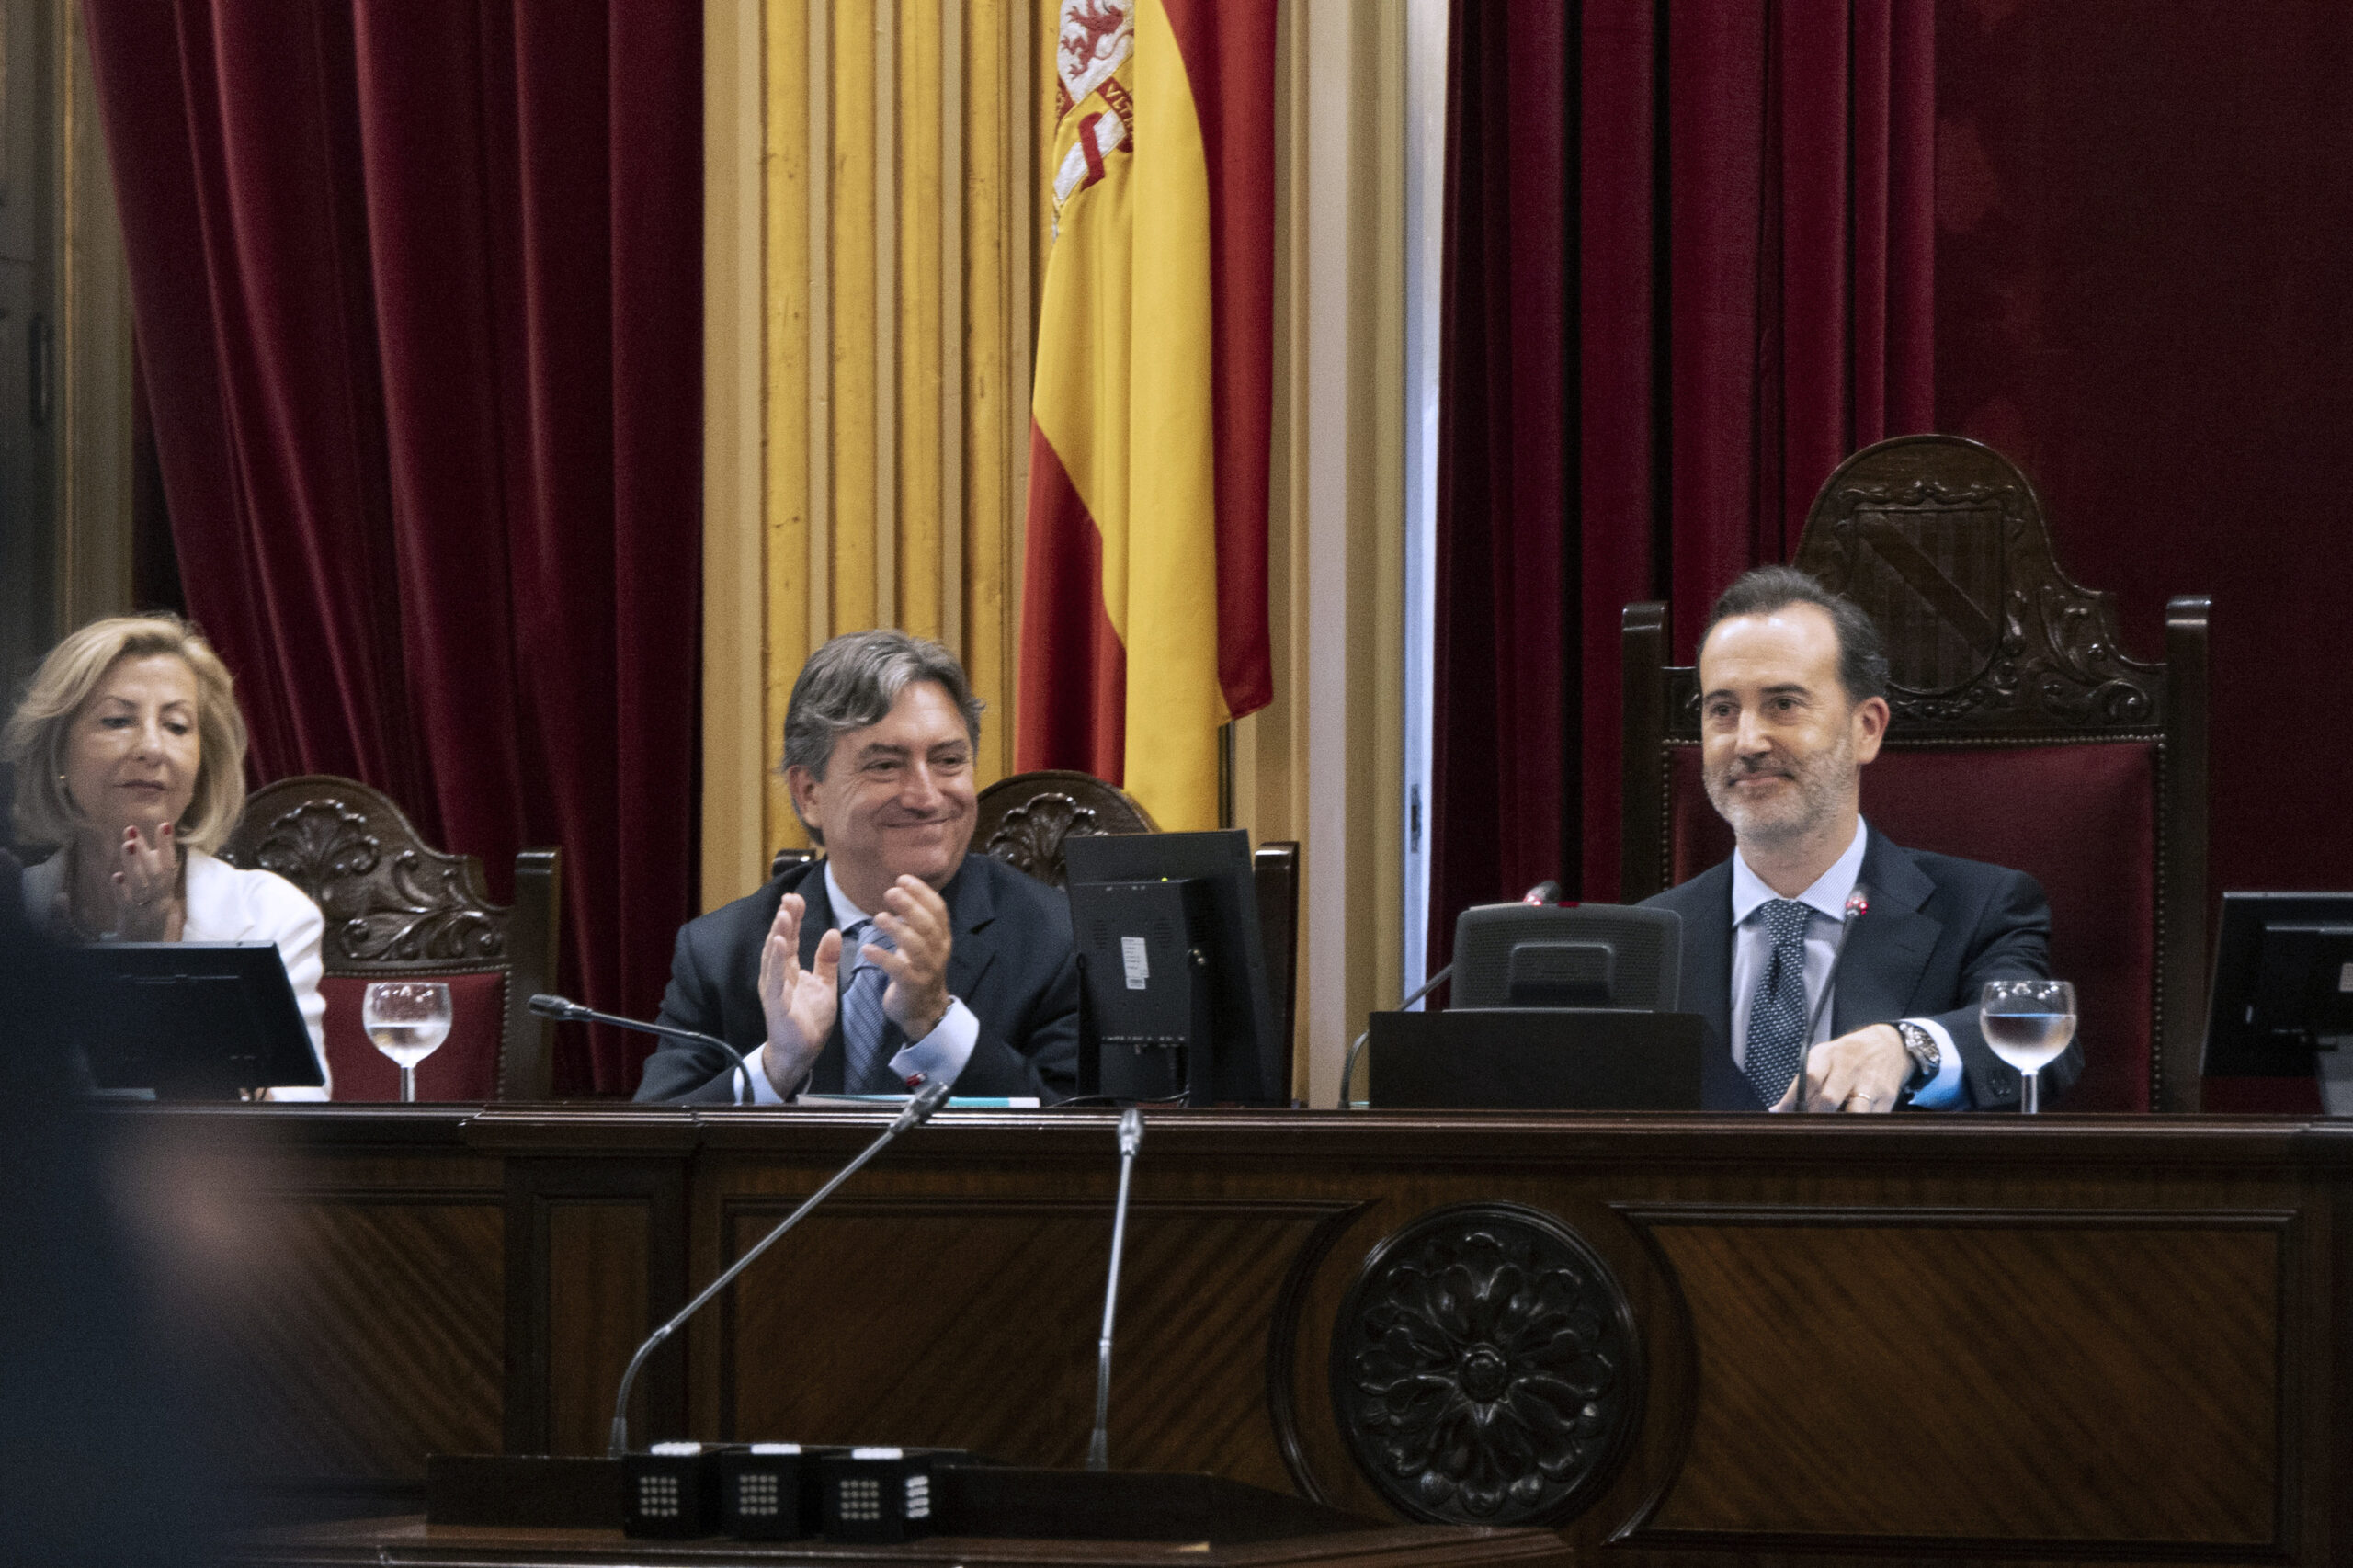 Der Vox-Präsident des Balearenparlaments wird sich bei der Verfassungszeremonie gegen die Regierung zur Wehr setzen